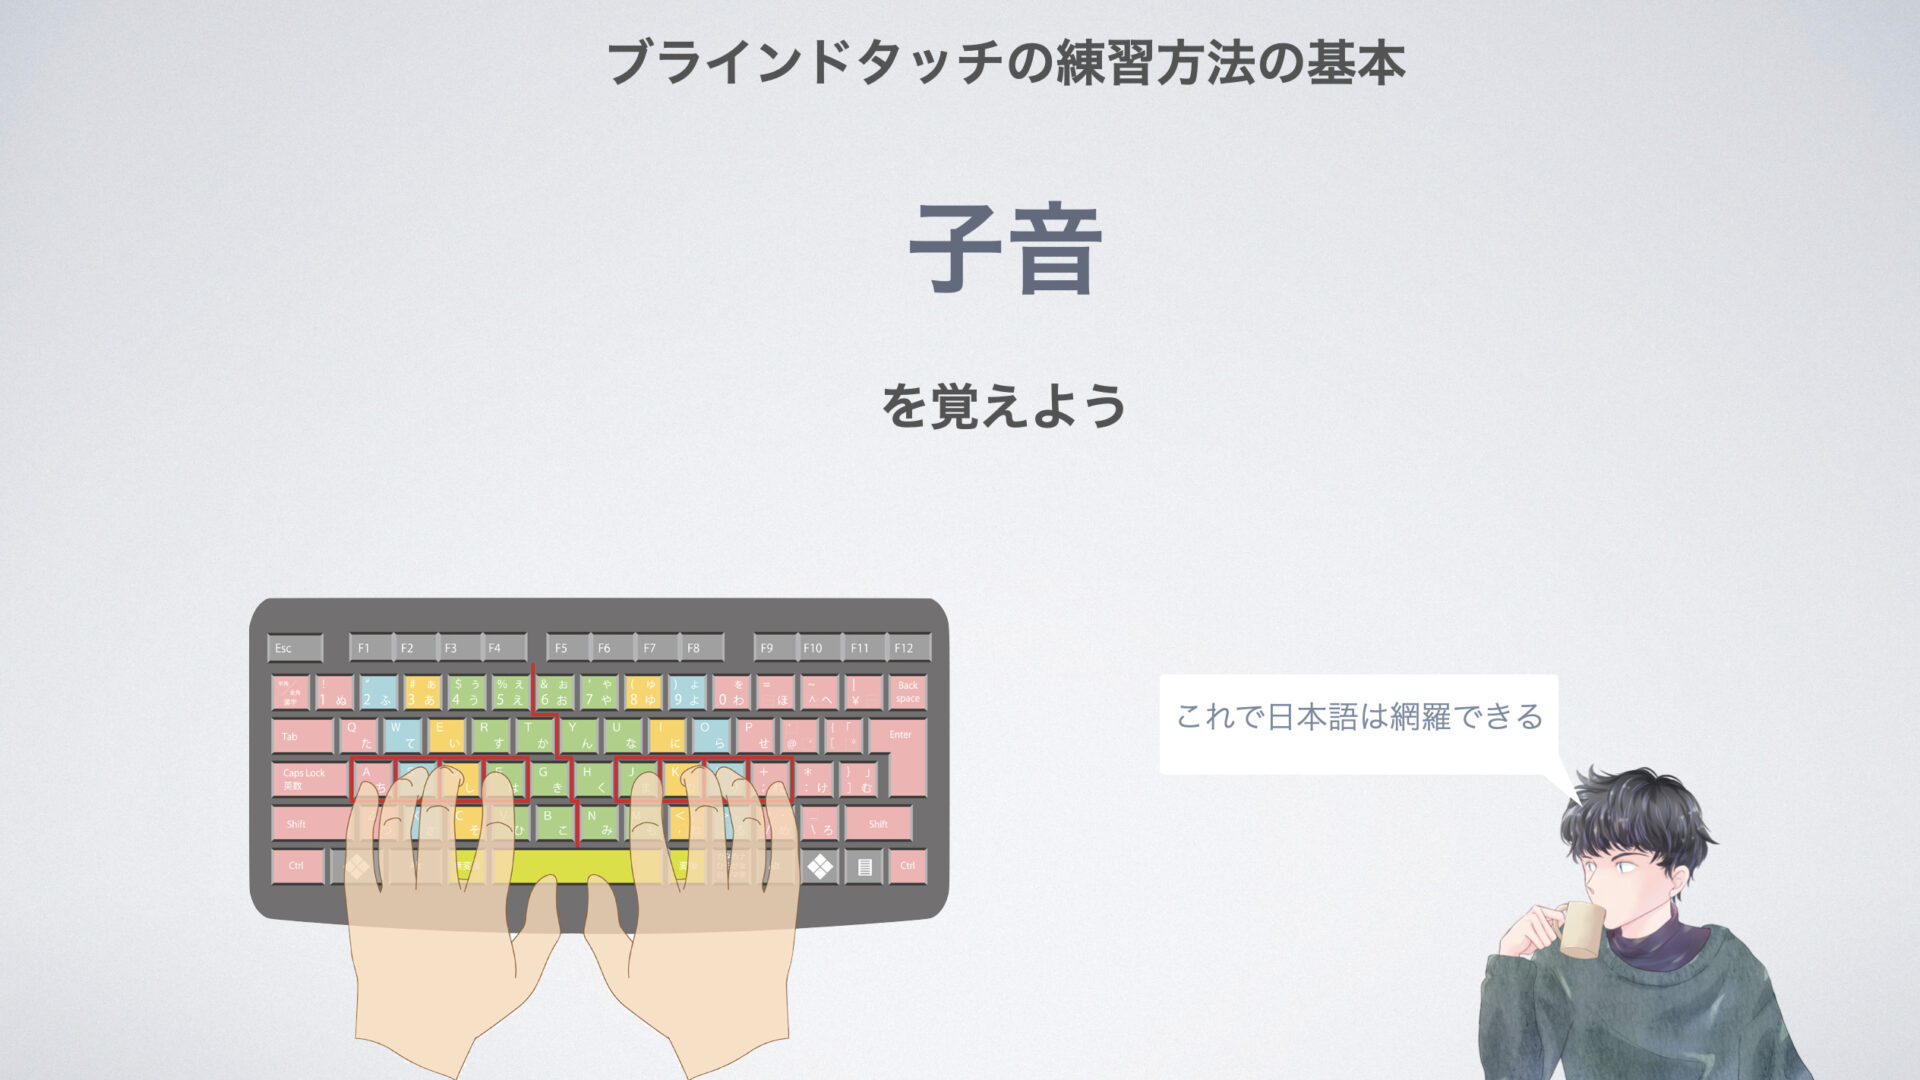 ブラインドタッチの練習方法
子音と母音で日本語は網羅できる